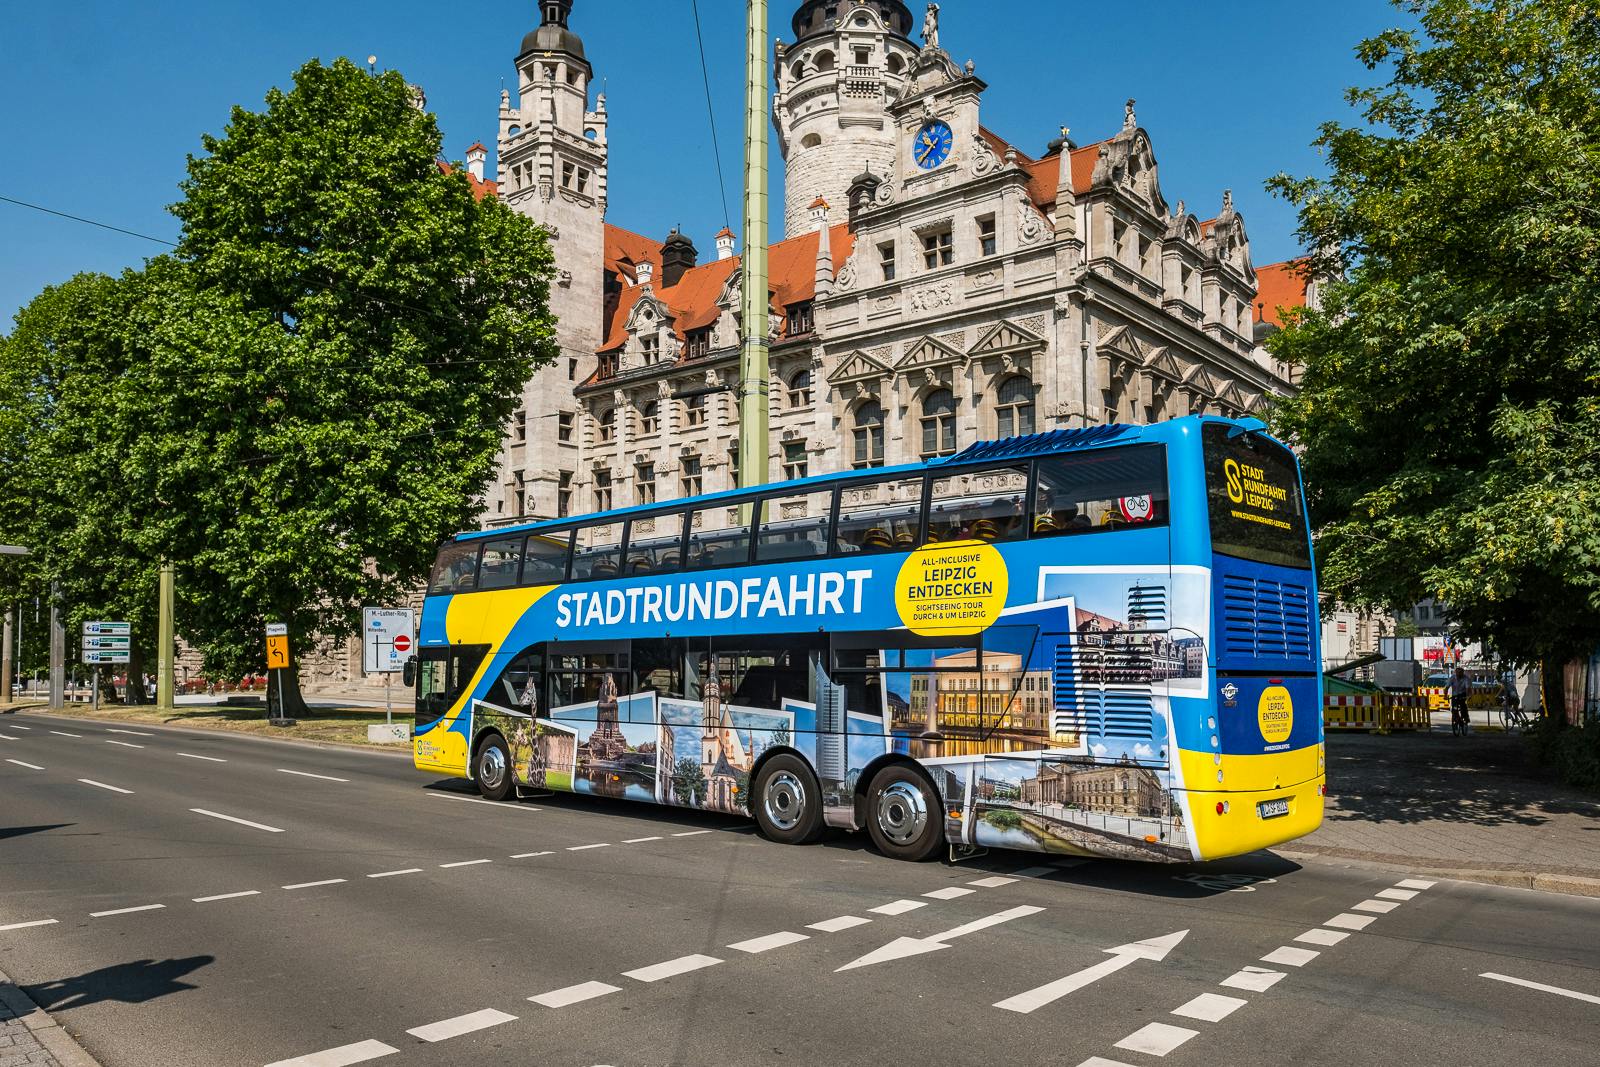 Tour della grande città di Lipsia con l'autobus hop-on hop-off